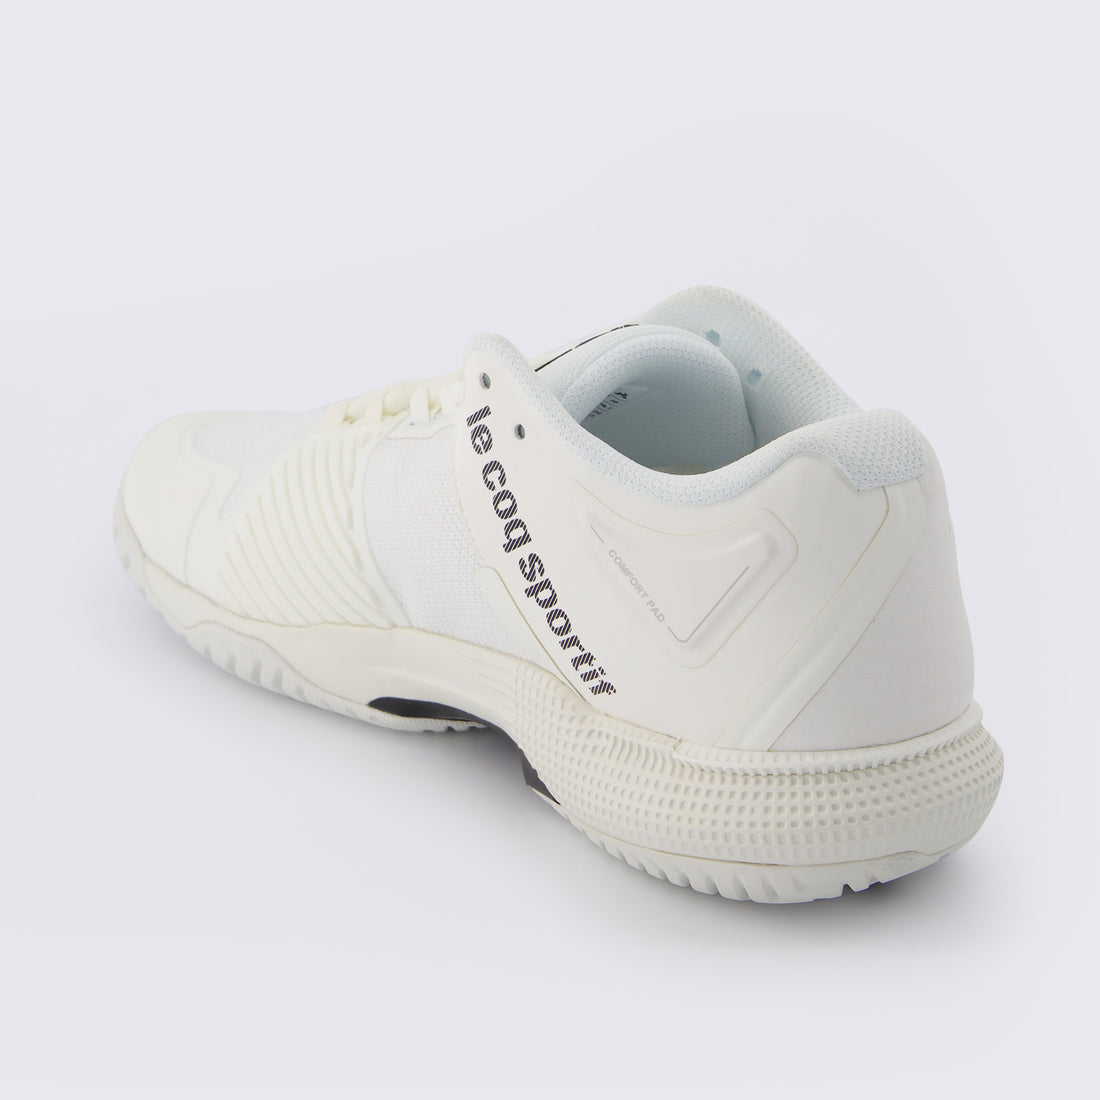 2210976-FUTUR LCS T01 ALL COURT bright white  | Zapatos de tennis FUTUR LCS T01 ALL COURT Unisex